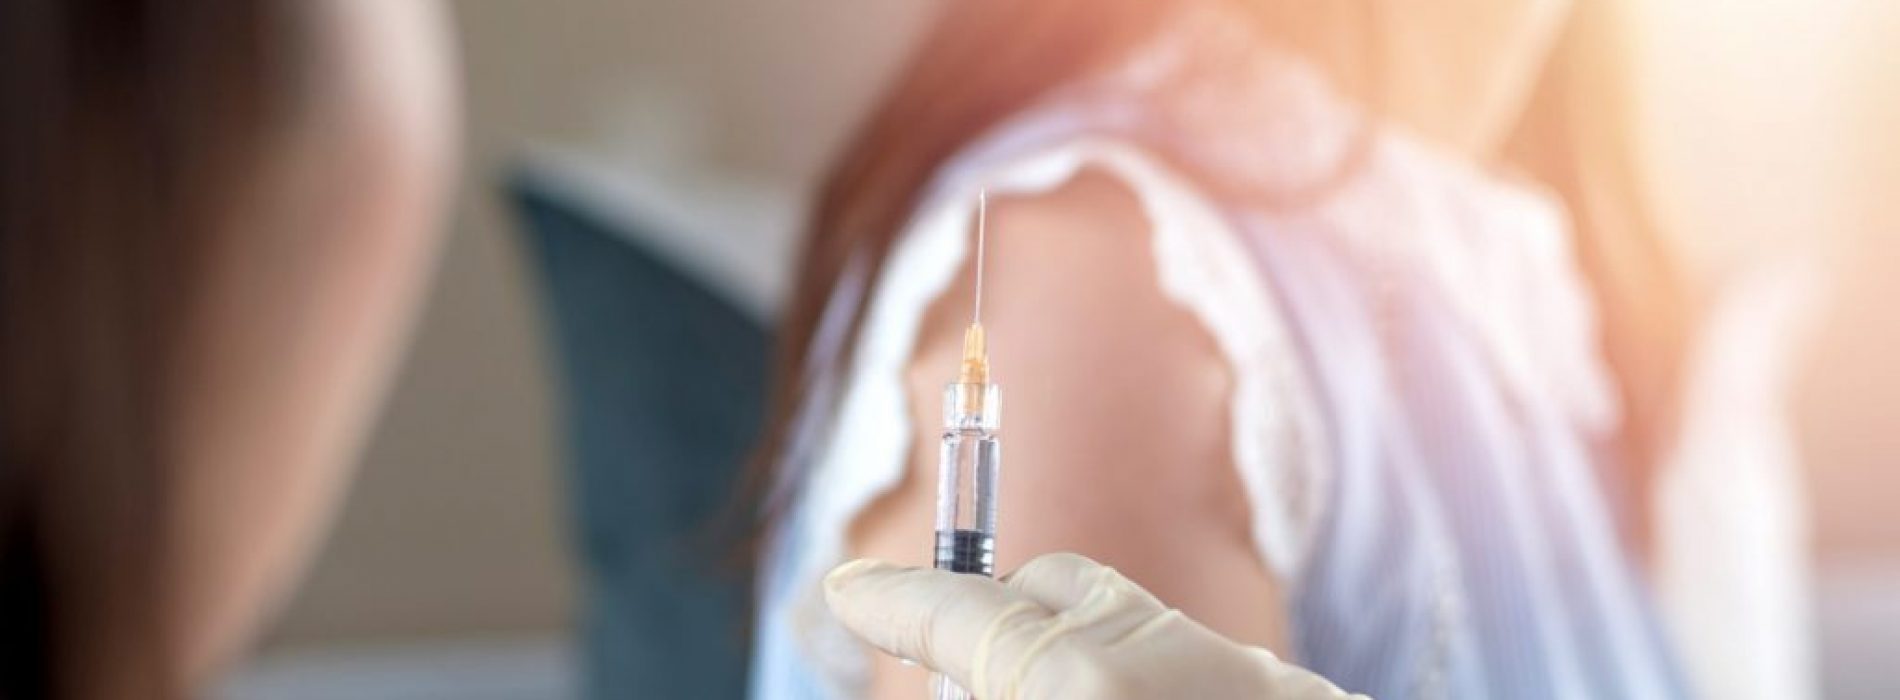 Is het Gardasil-vaccin gekoppeld aan een recorddaling van de geboortecijfers?